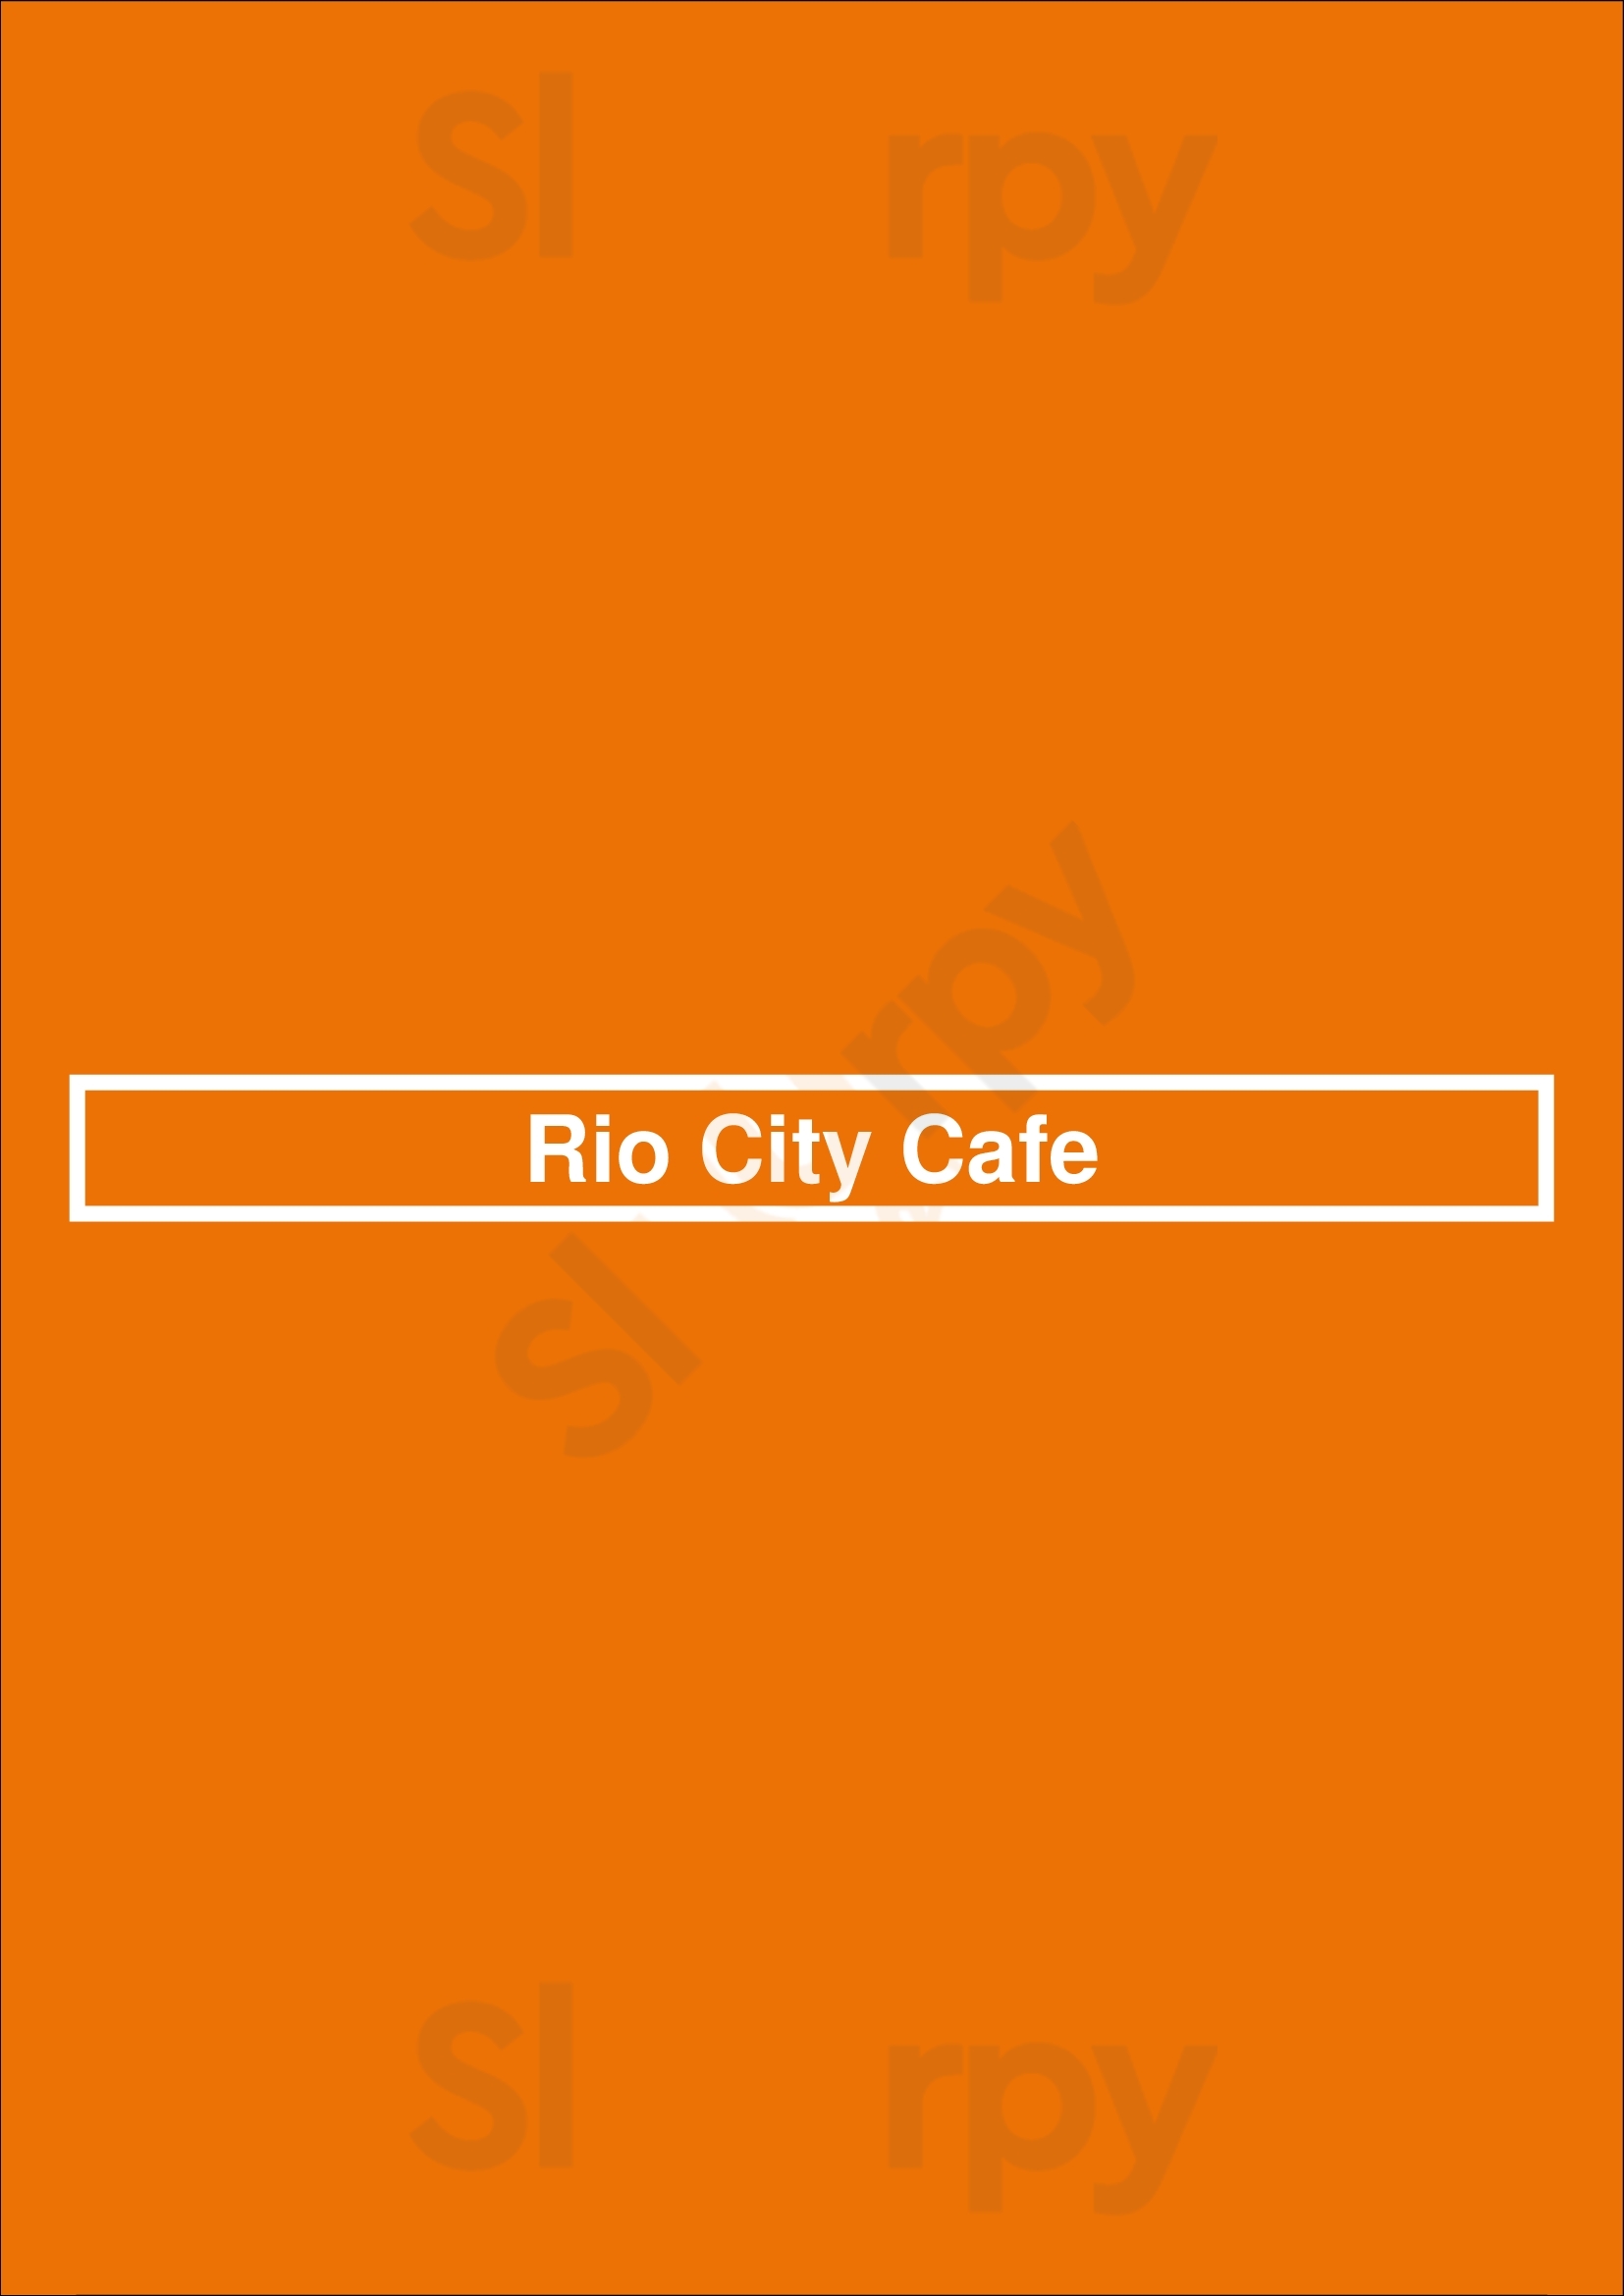 Rio City Cafe Sacramento Menu - 1